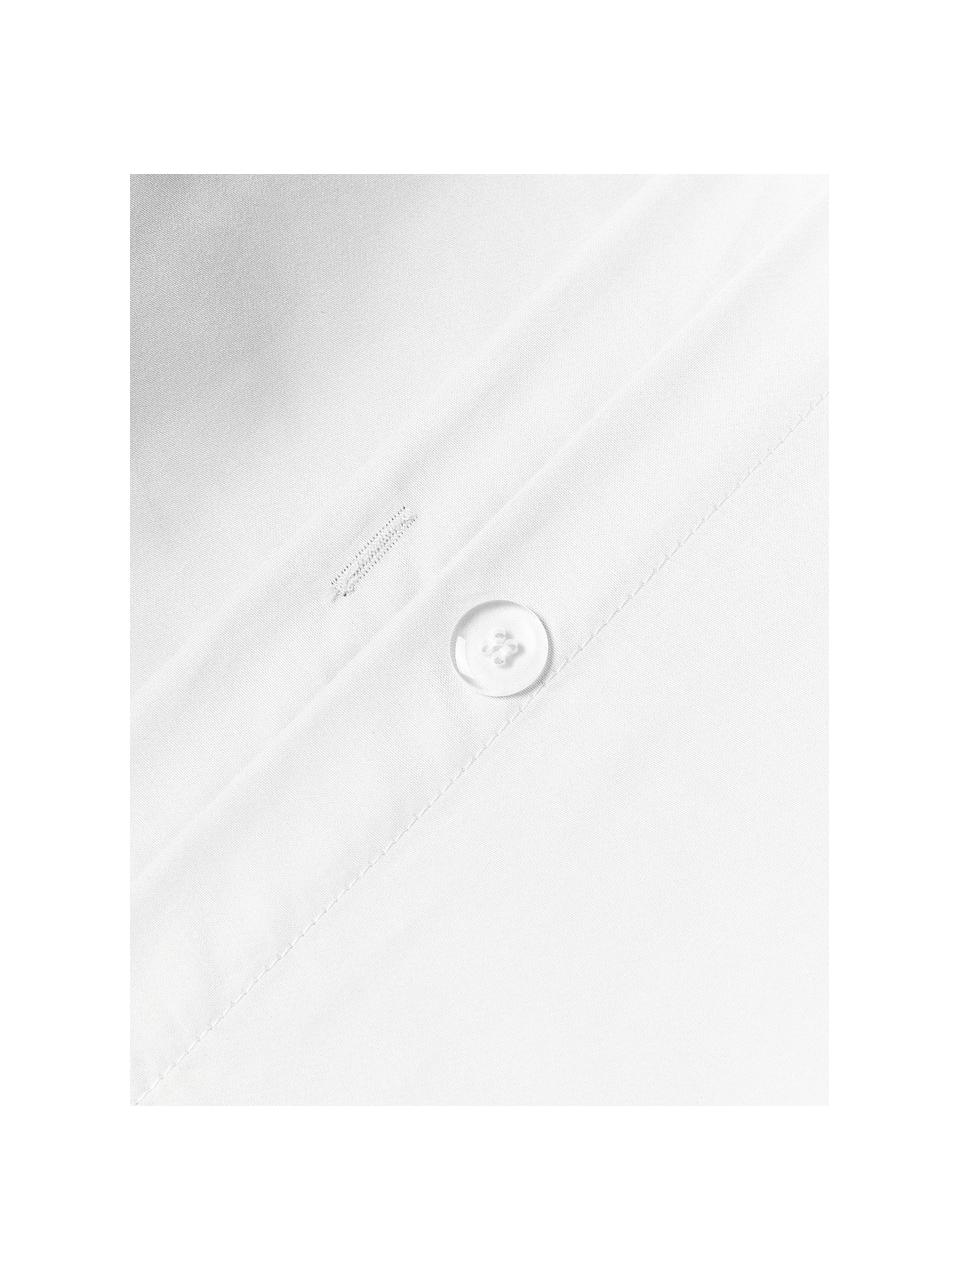 Poszwa na kołdrę z satyny bawełnianej Comfort, Biały, S 200 x D 200 cm